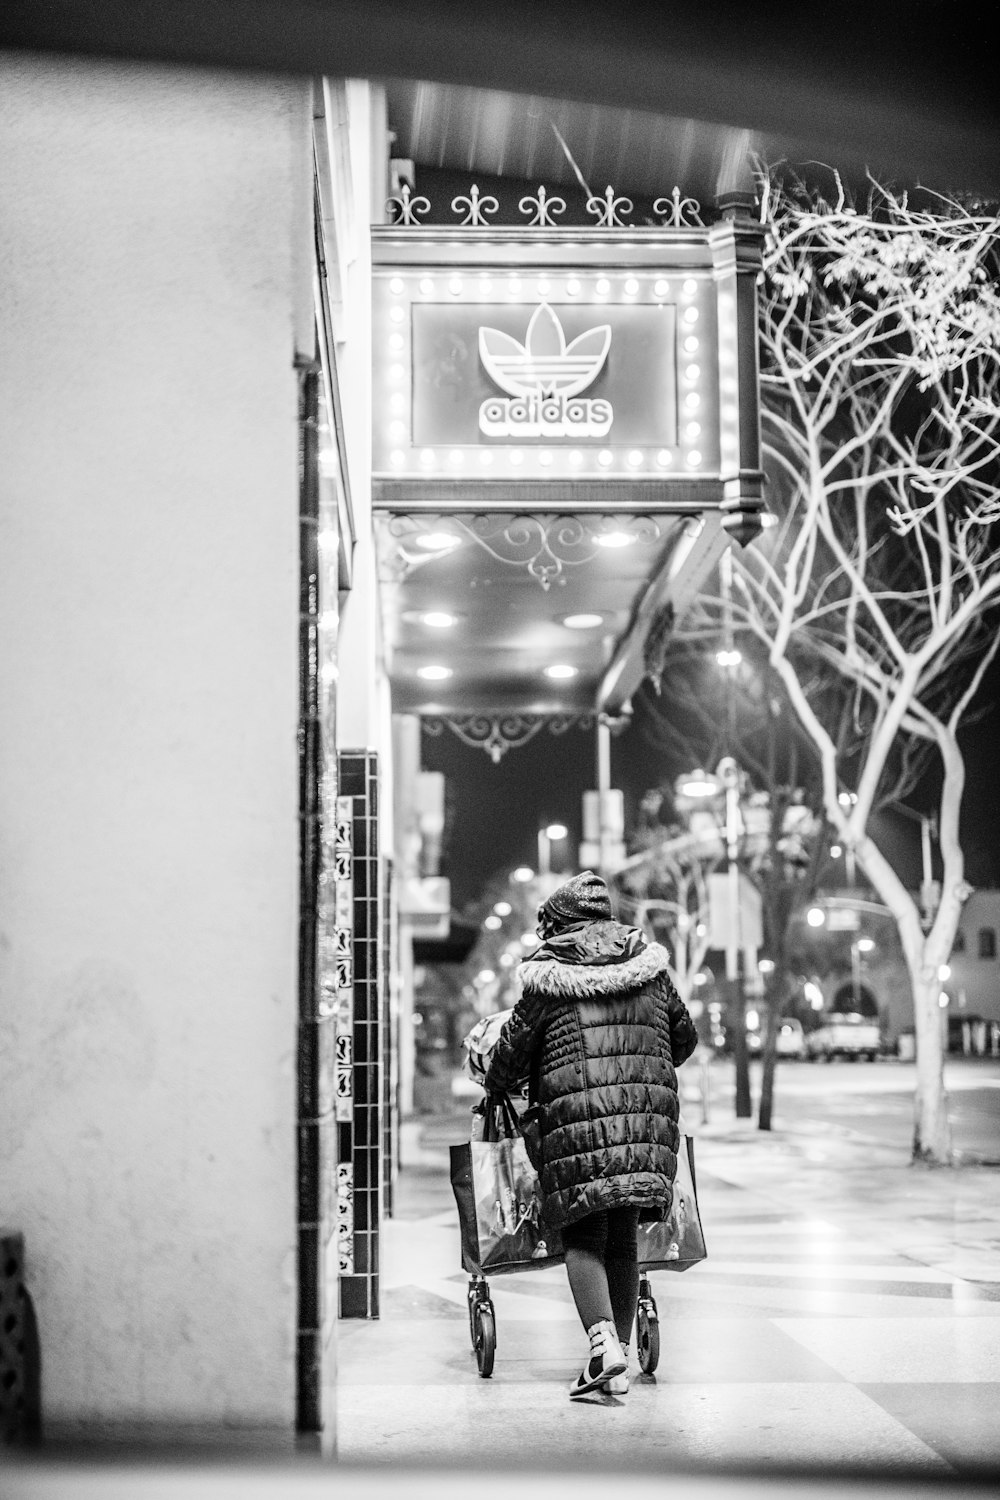 foto in scala di grigi di una persona che cammina sul marciapiede vicino al negozio Adidas